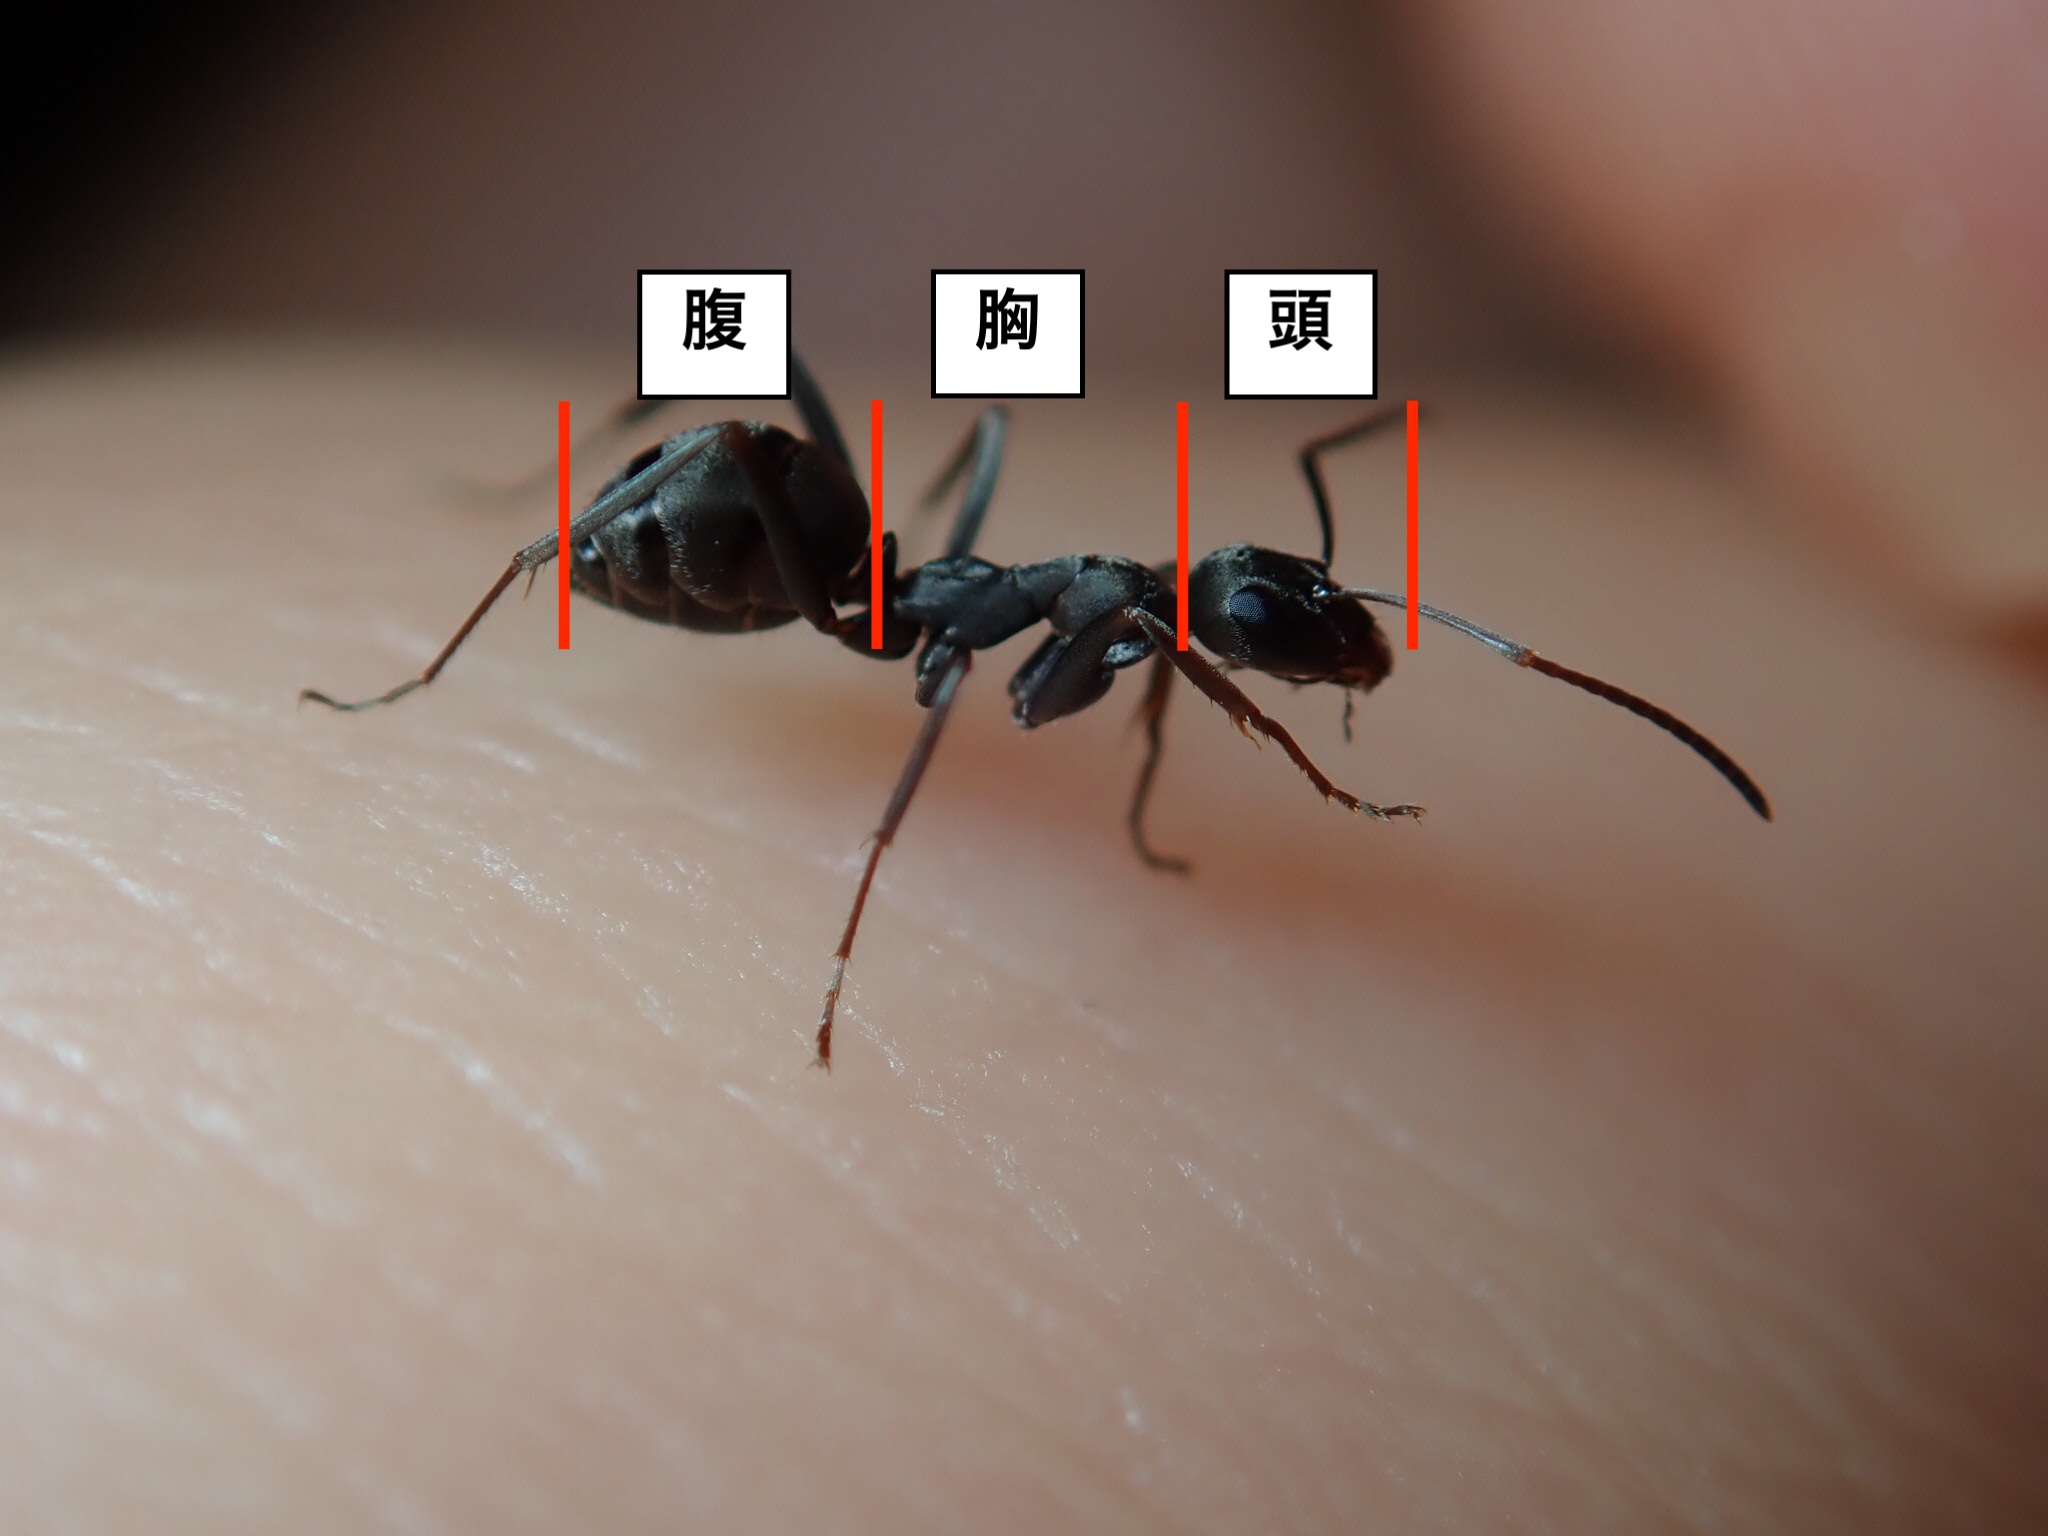 アリの飼育を始めたい人が初めにすべき たった1つのこと アリの巣のぞいてく